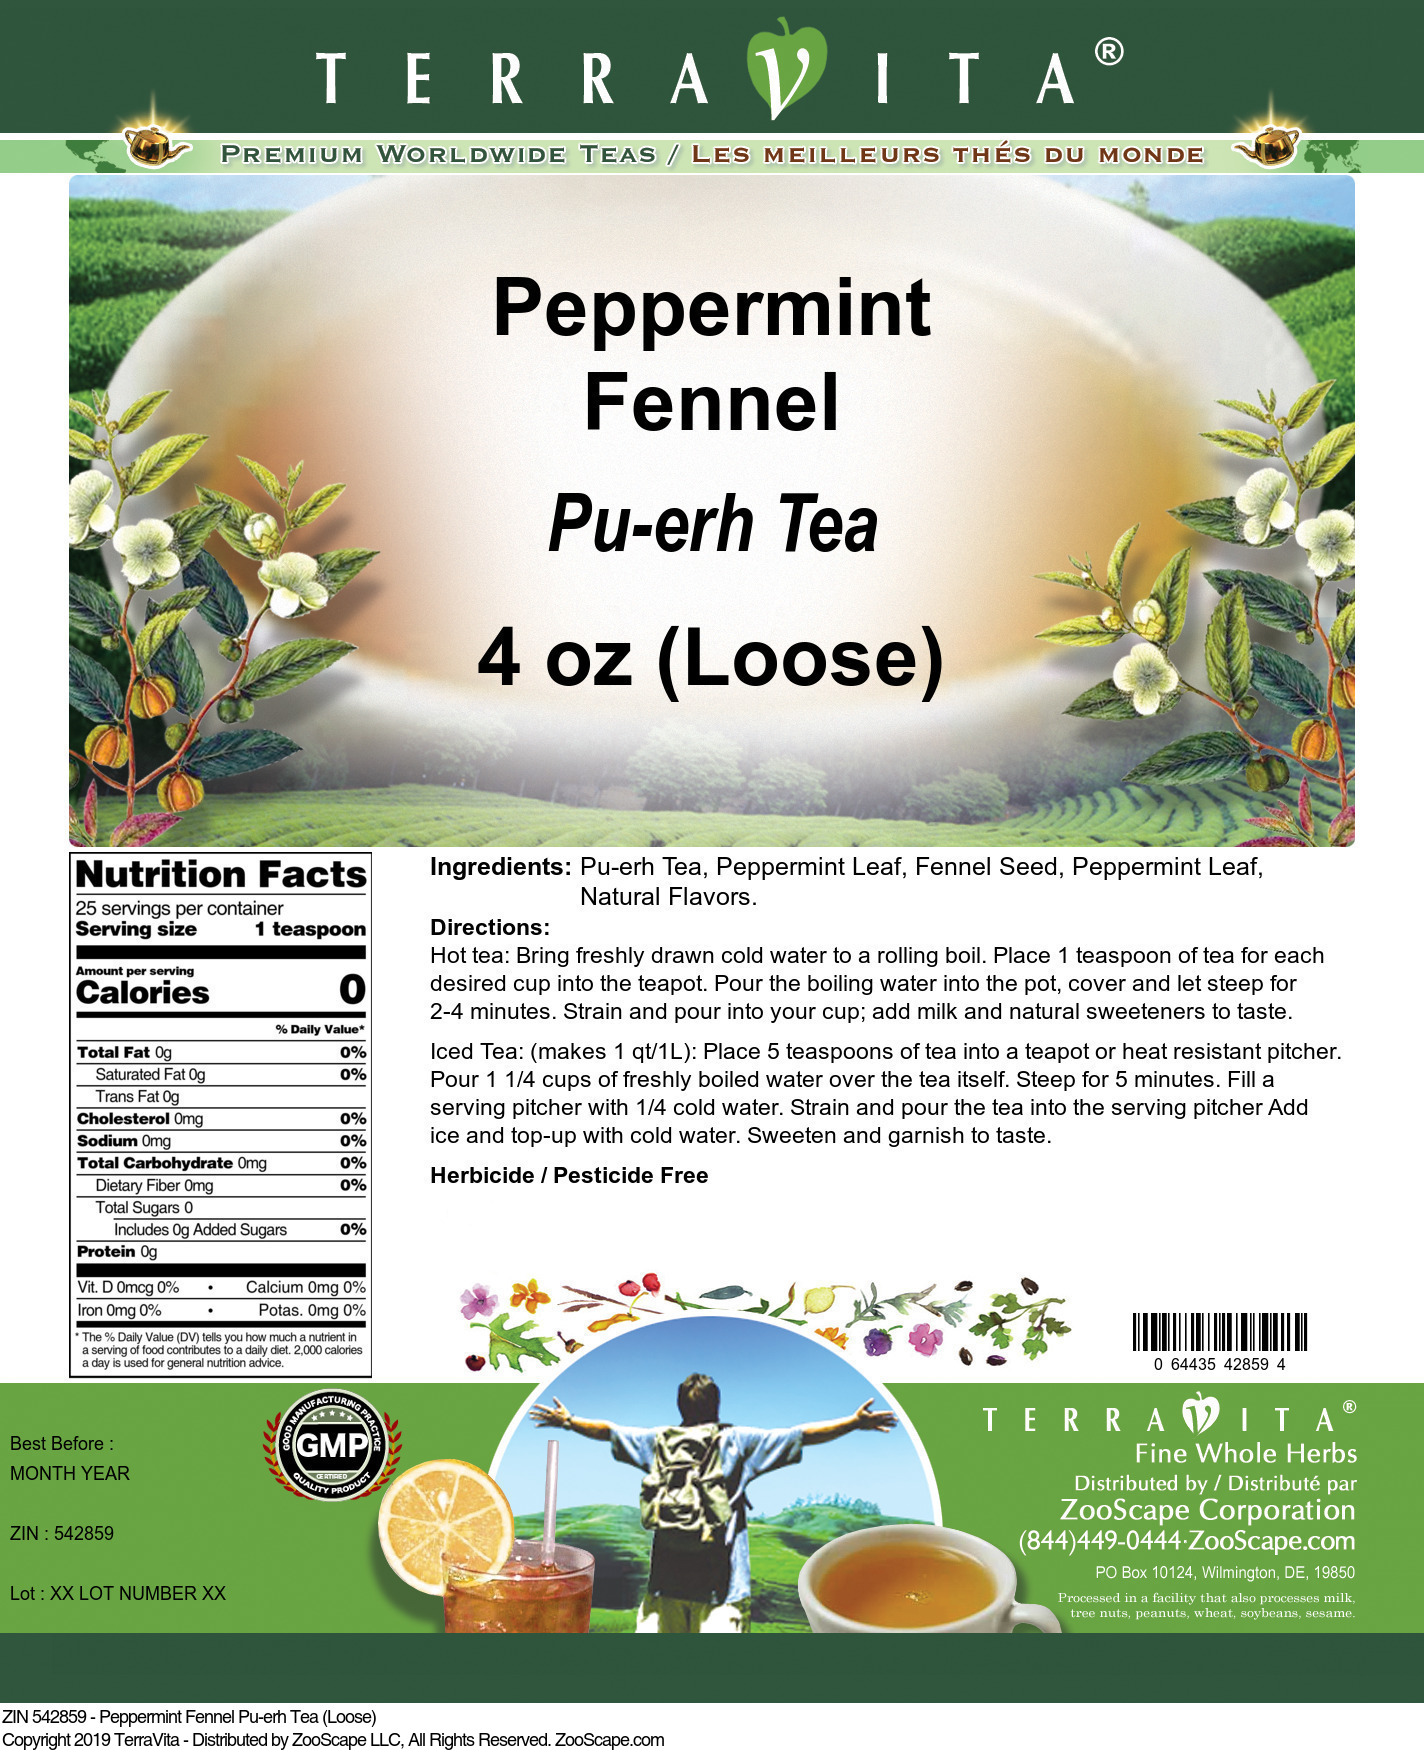 Peppermint Fennel Pu-erh Tea (Loose) - Label